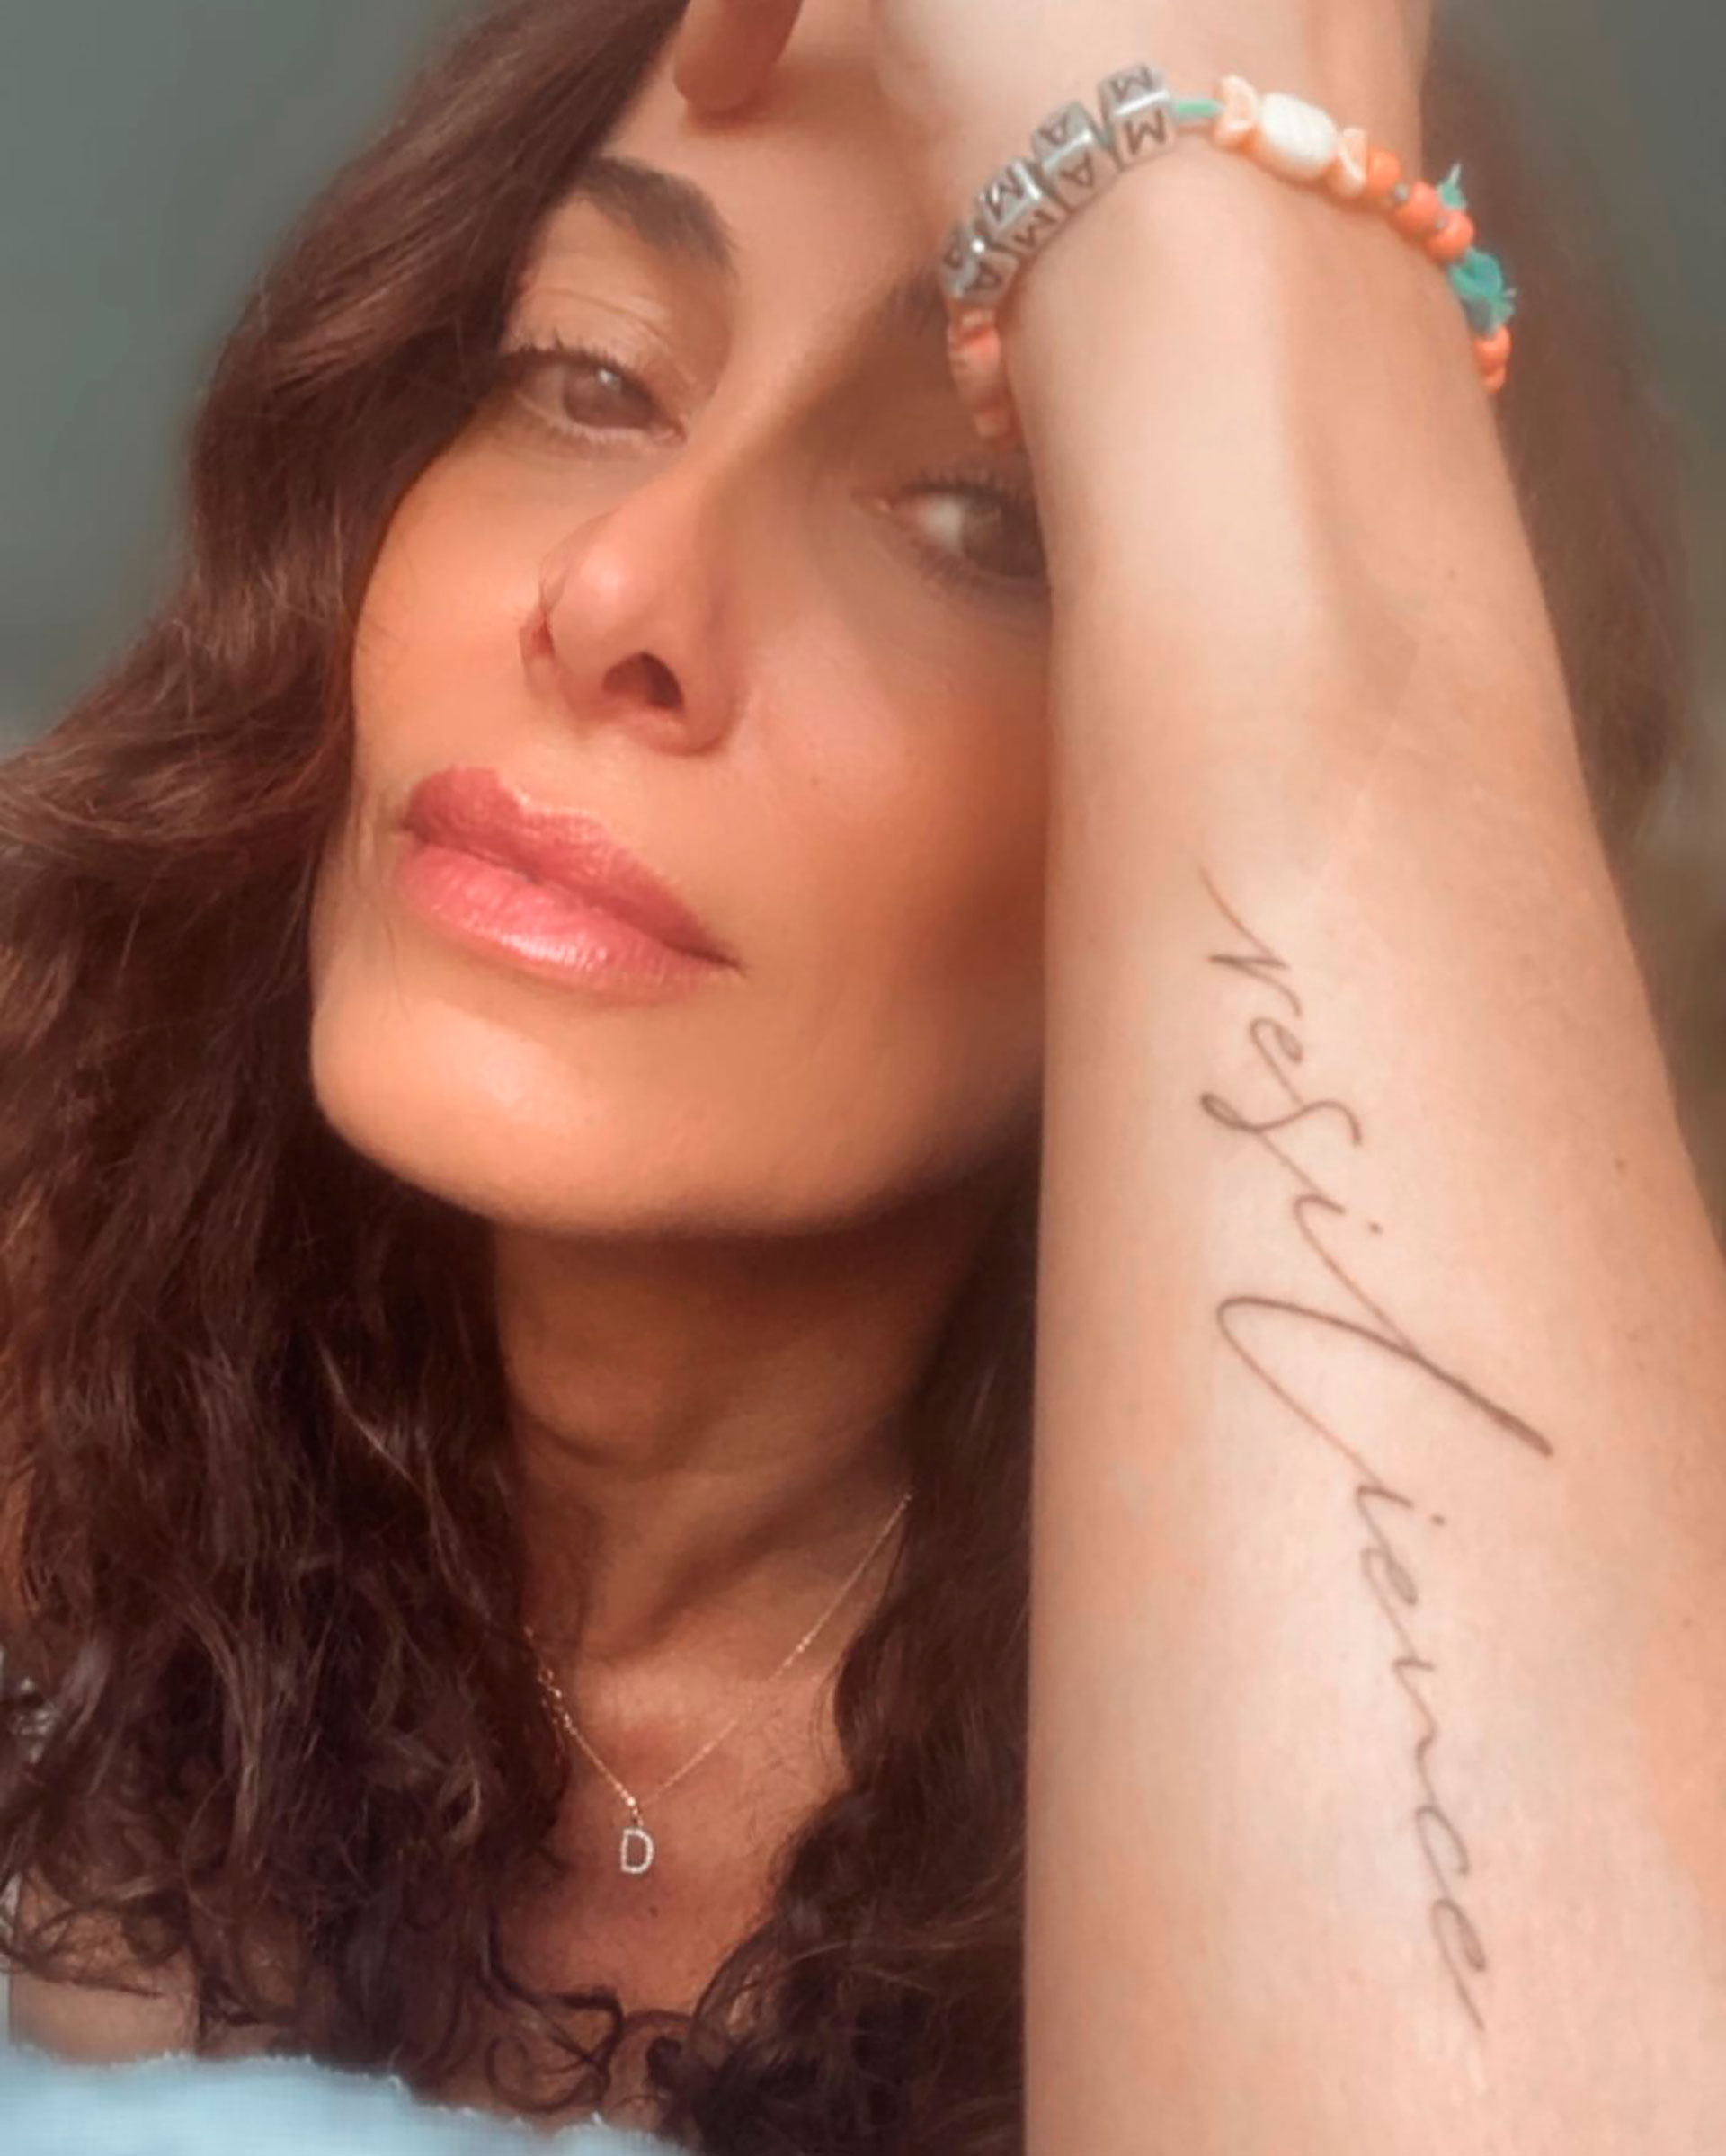 El nuevo tatuaje de Débora Bello tras separarse de Diego Torres